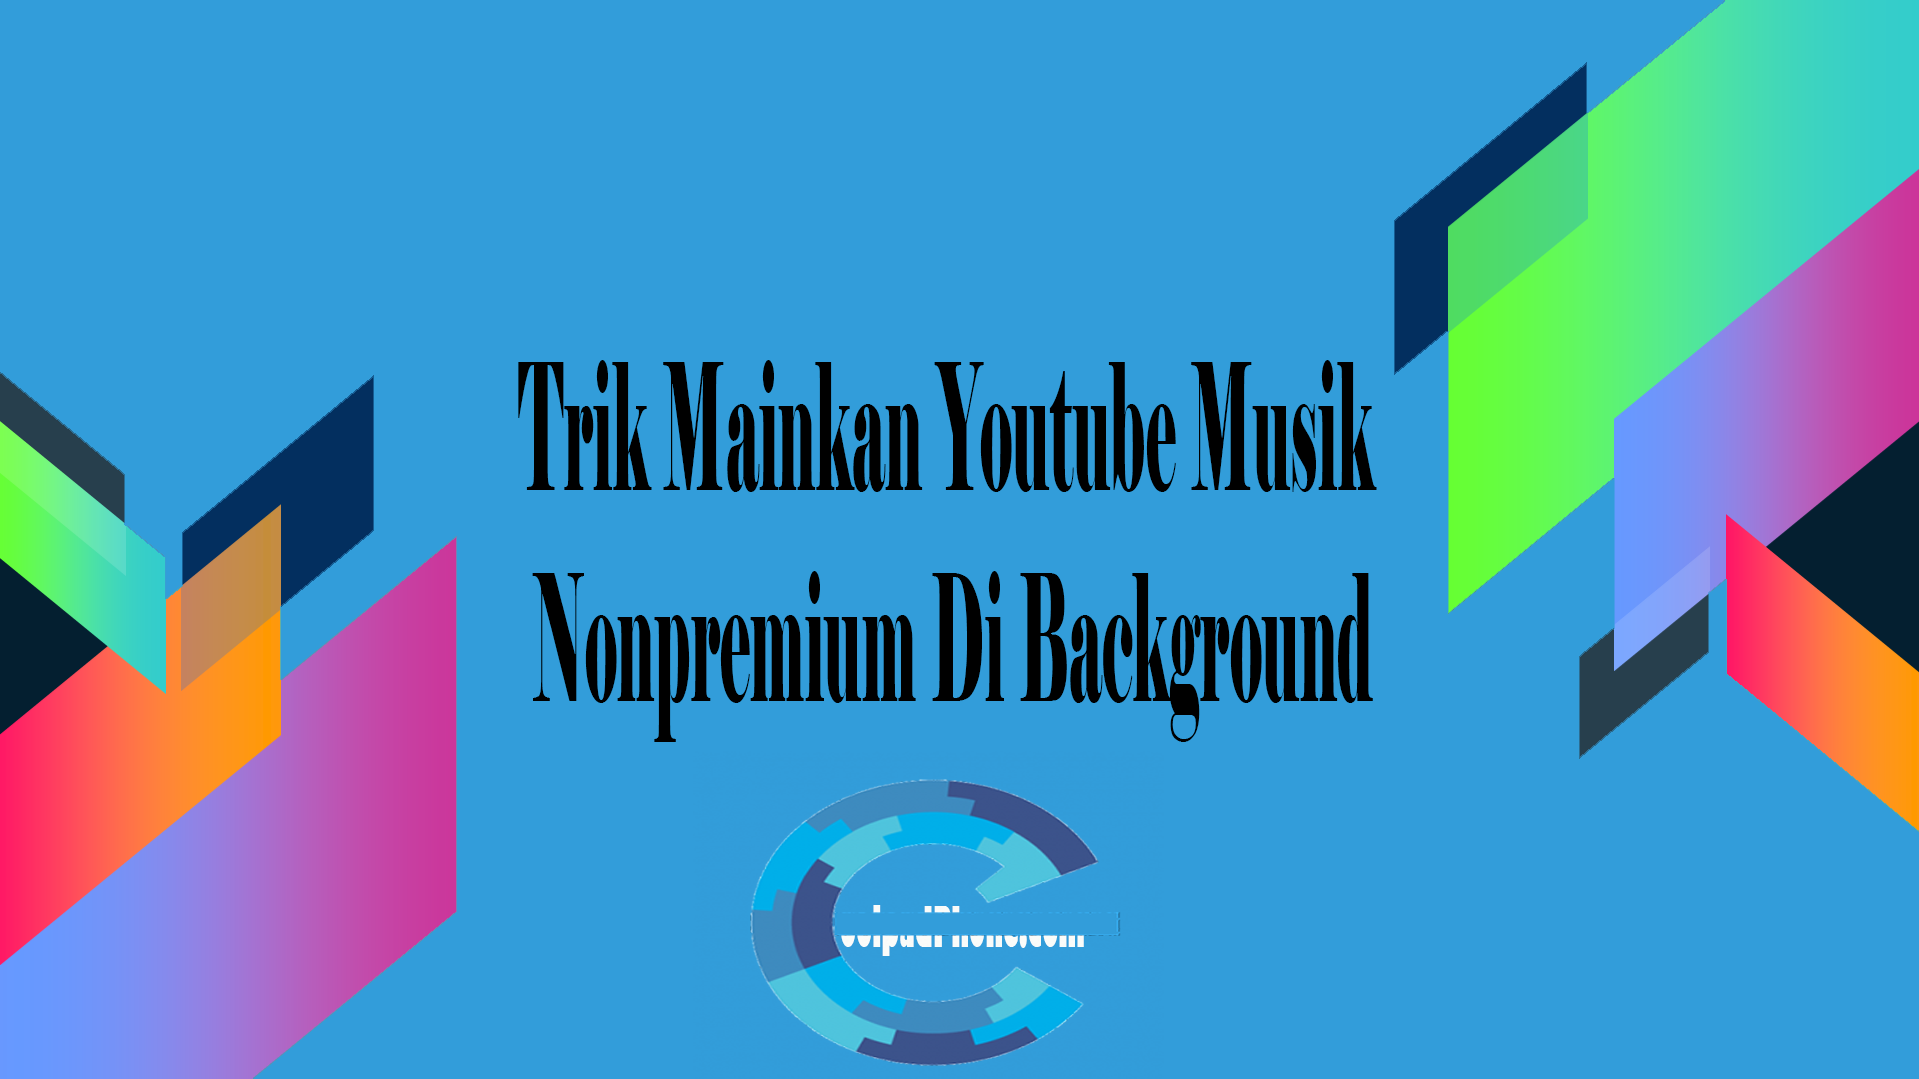 Trik Mainkan Youtube Musik Nonpremium Di Background